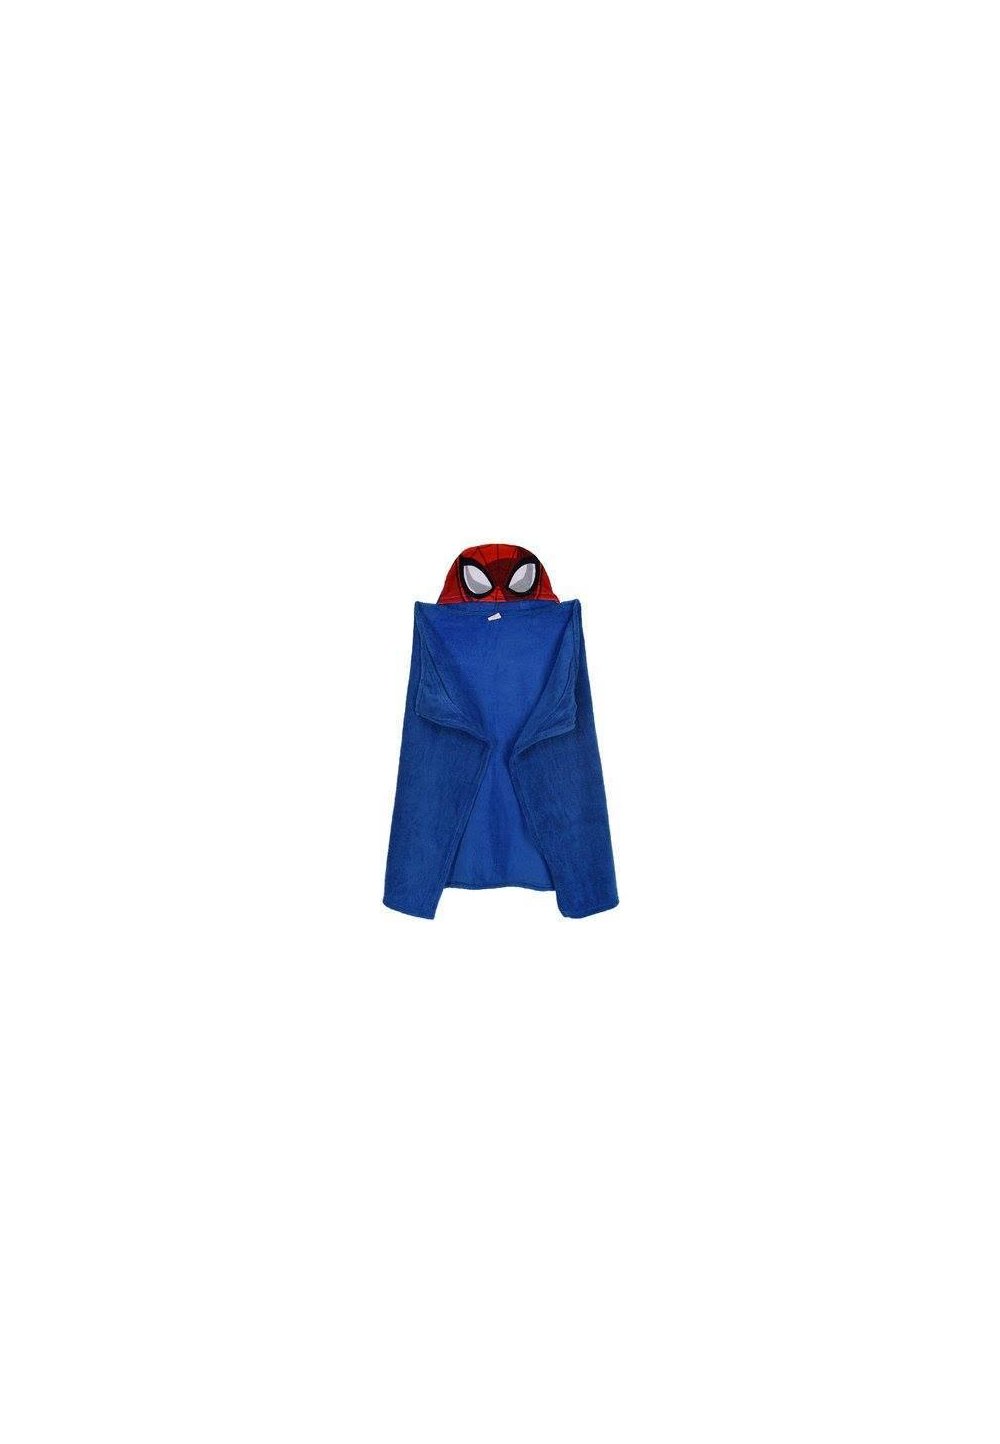 Paturica, pluss cu gluga, albastra, Spider Man, 80 x 120 cm 120